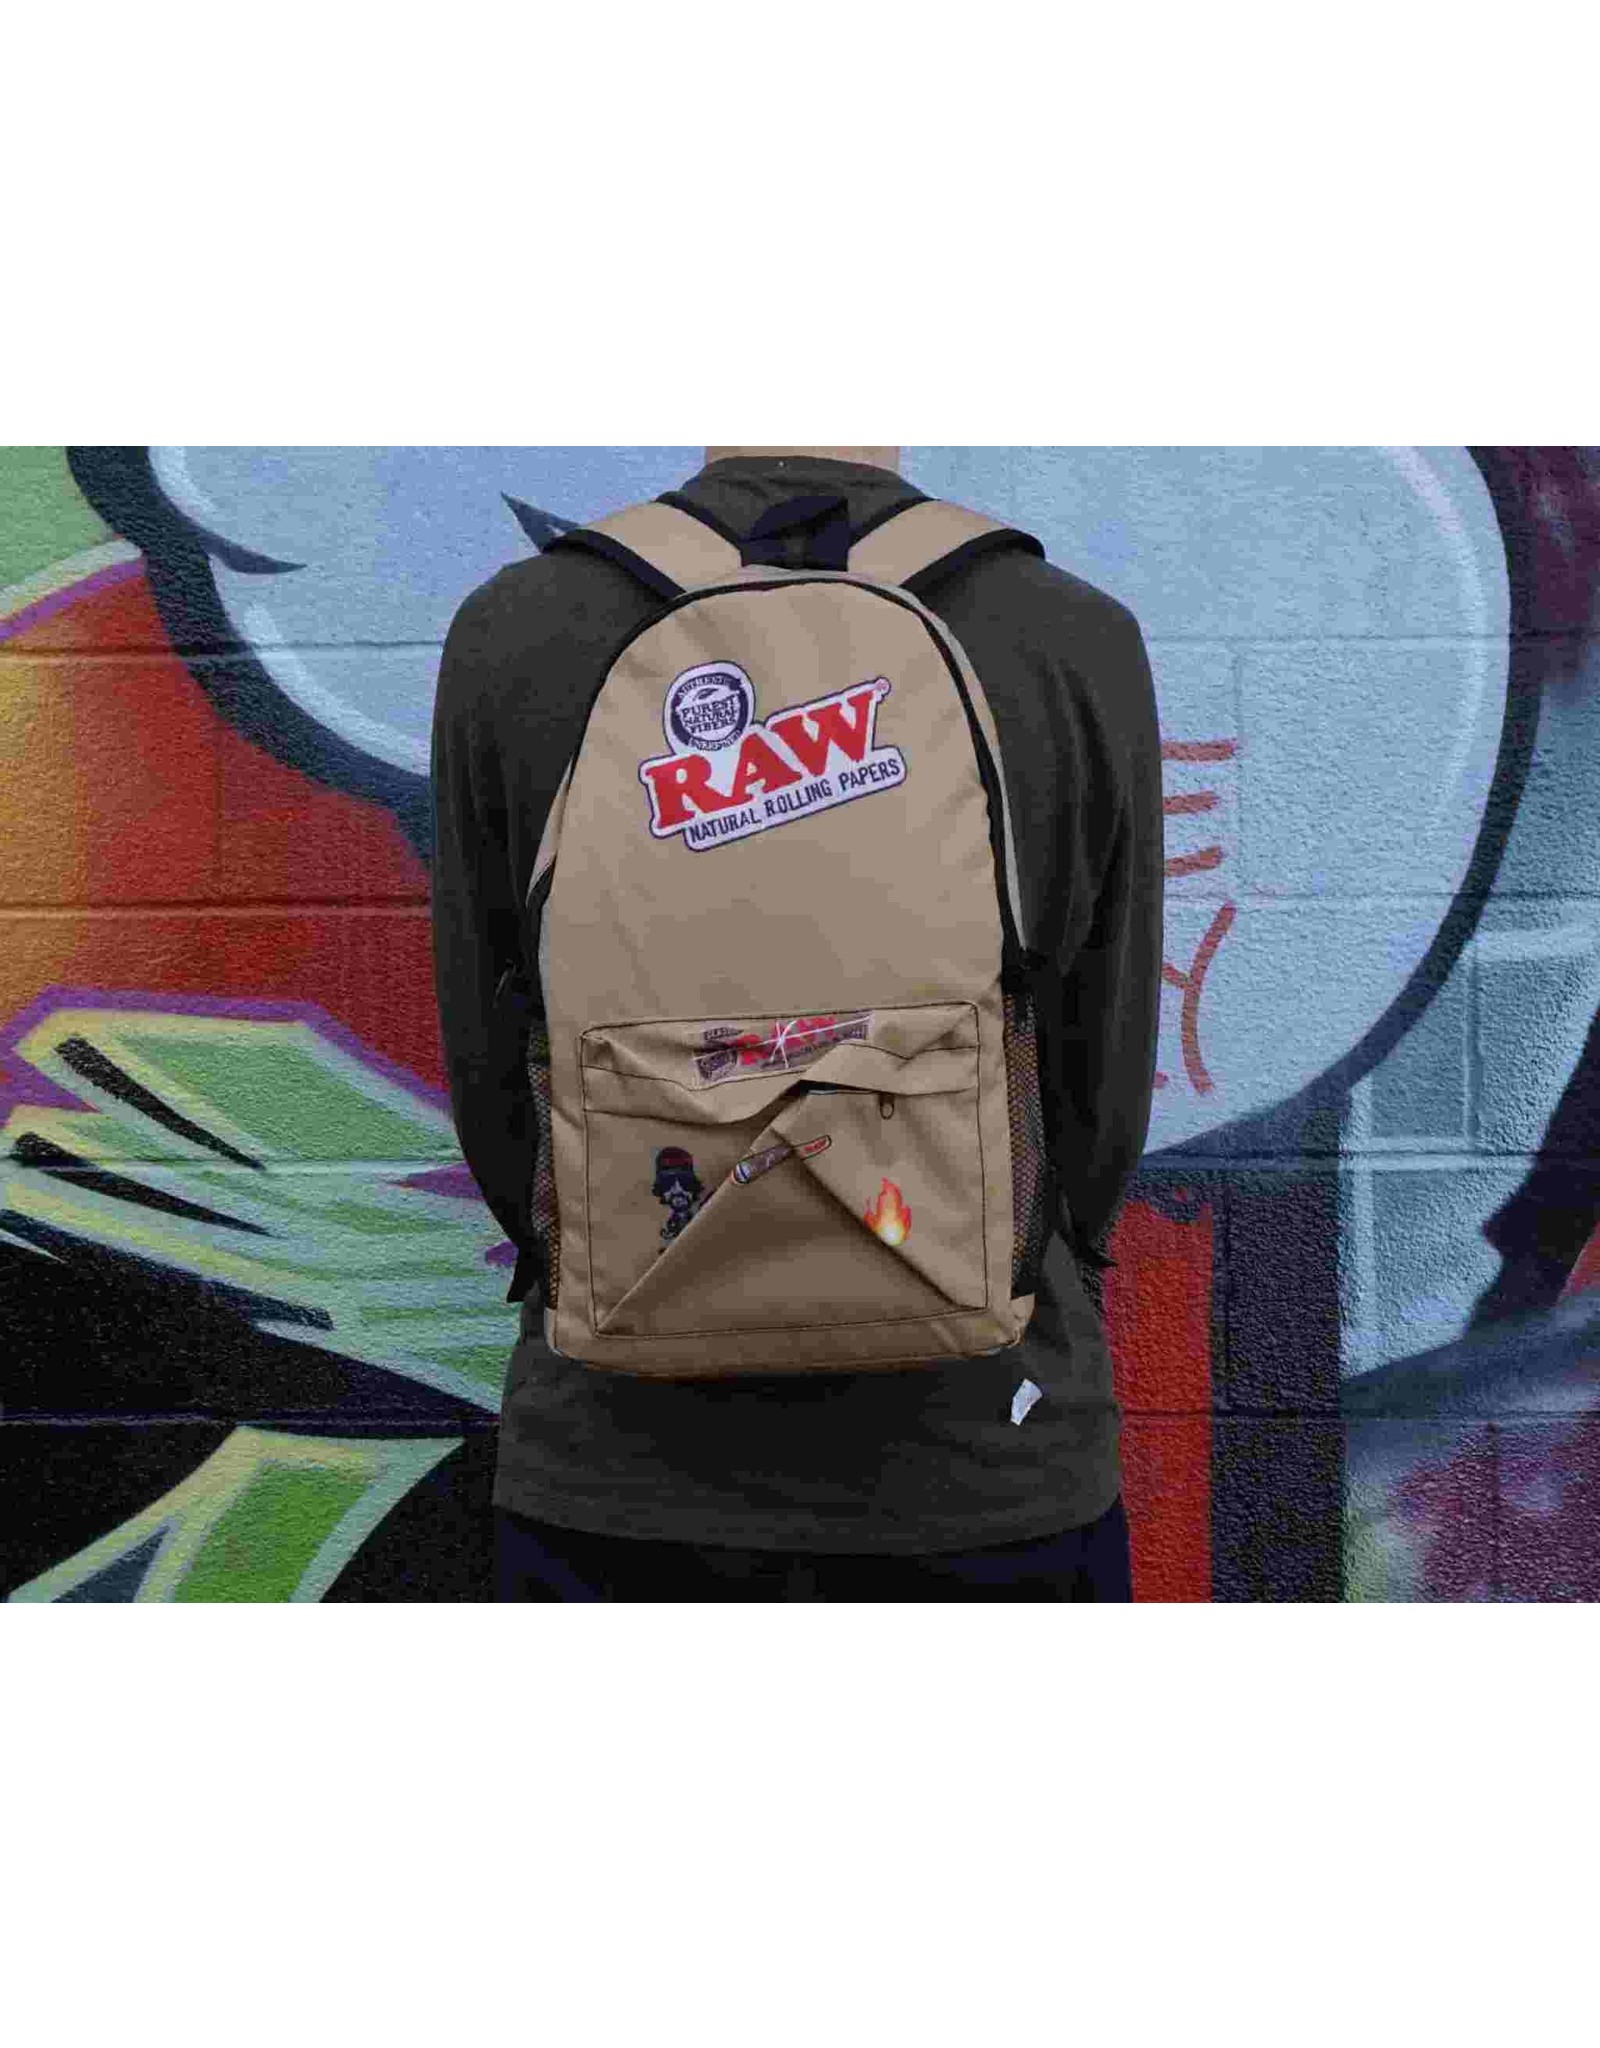 Raw Backpack - Tan